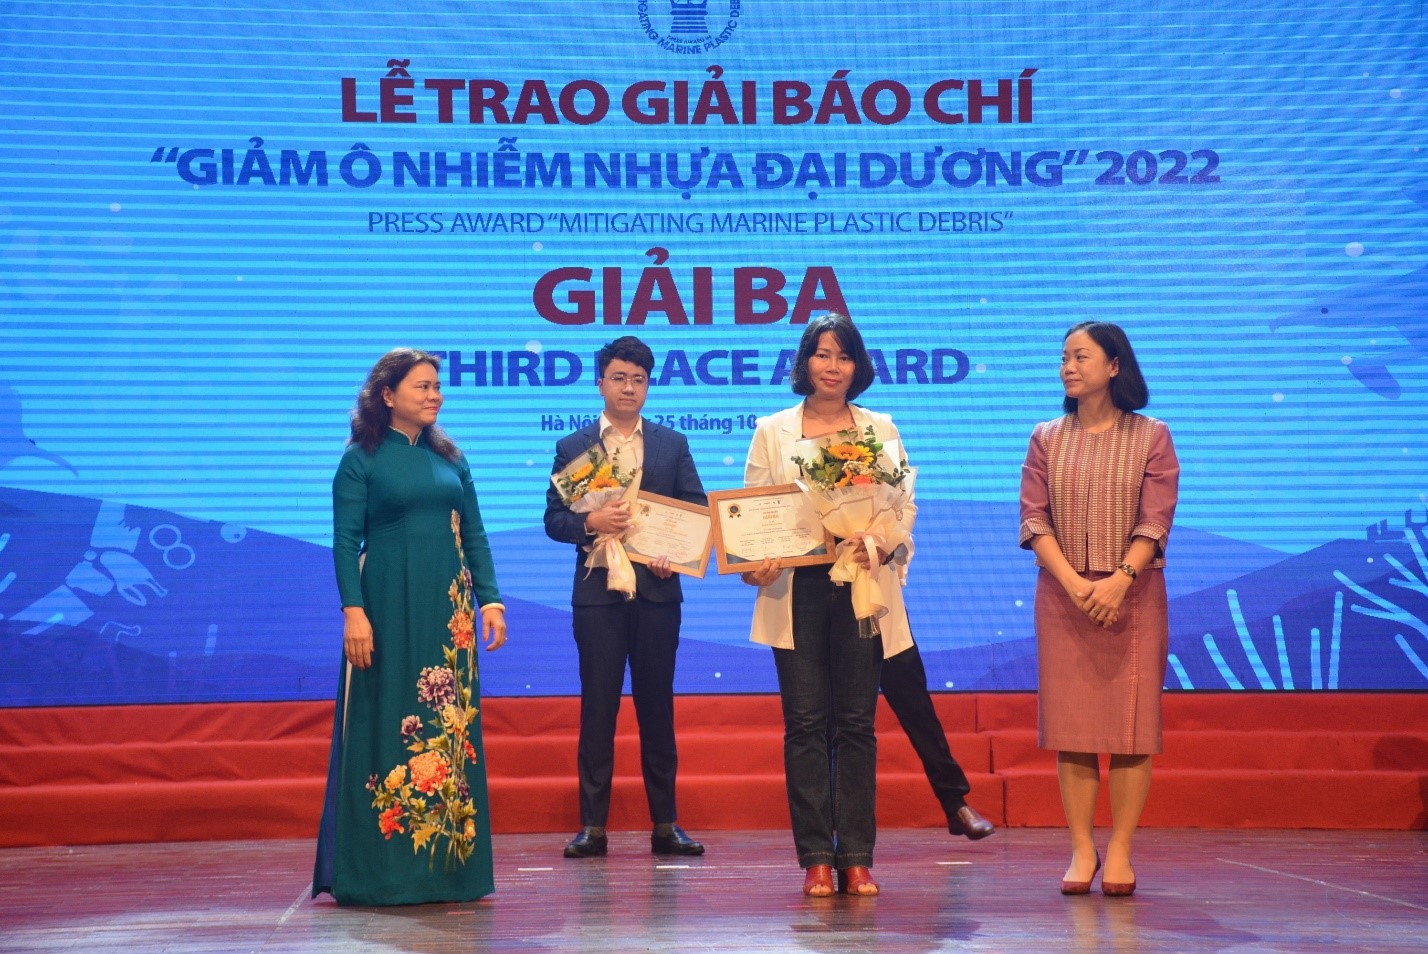 Tác giả Trần Thị Hường (Vuasanca
) nhận Giải Ba Giải báo chí Giảm ô nhiễm nhựa đại dương năm 2022